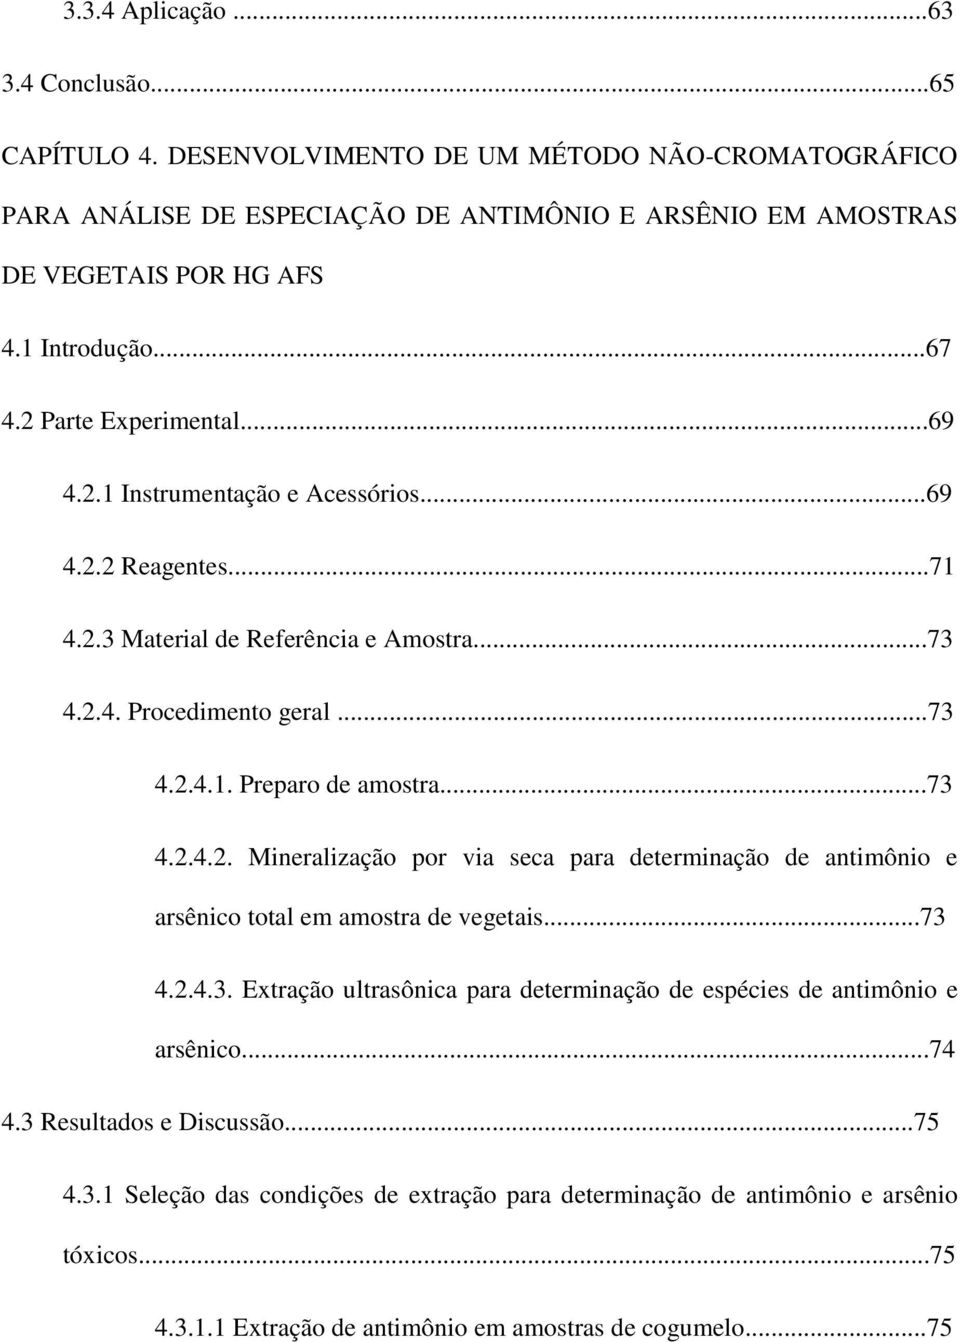 ..73 4.2.4.2. Mineralização por via seca para determinação de antimônio e arsênico total em amostra de vegetais...73 4.2.4.3. Extração ultrasônica para determinação de espécies de antimônio e arsênico.